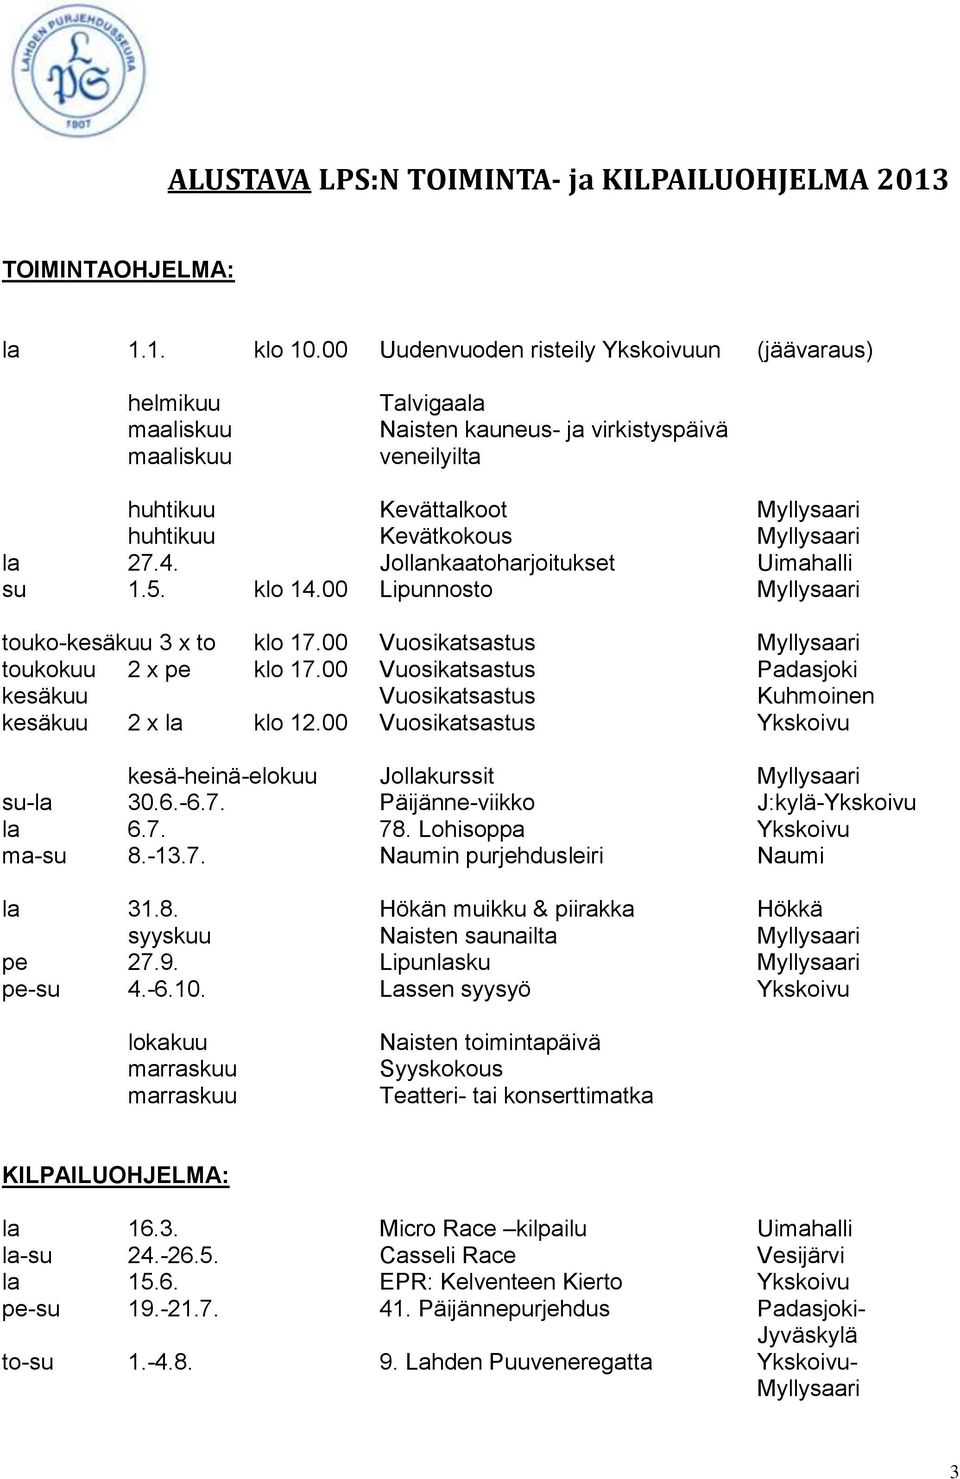 la 27.4. Jollankaatoharjoitukset Uimahalli su 1.5. klo 14.00 Lipunnosto Myllysaari touko-kesäkuu 3 x to klo 17.00 Vuosikatsastus Myllysaari toukokuu 2 x pe klo 17.